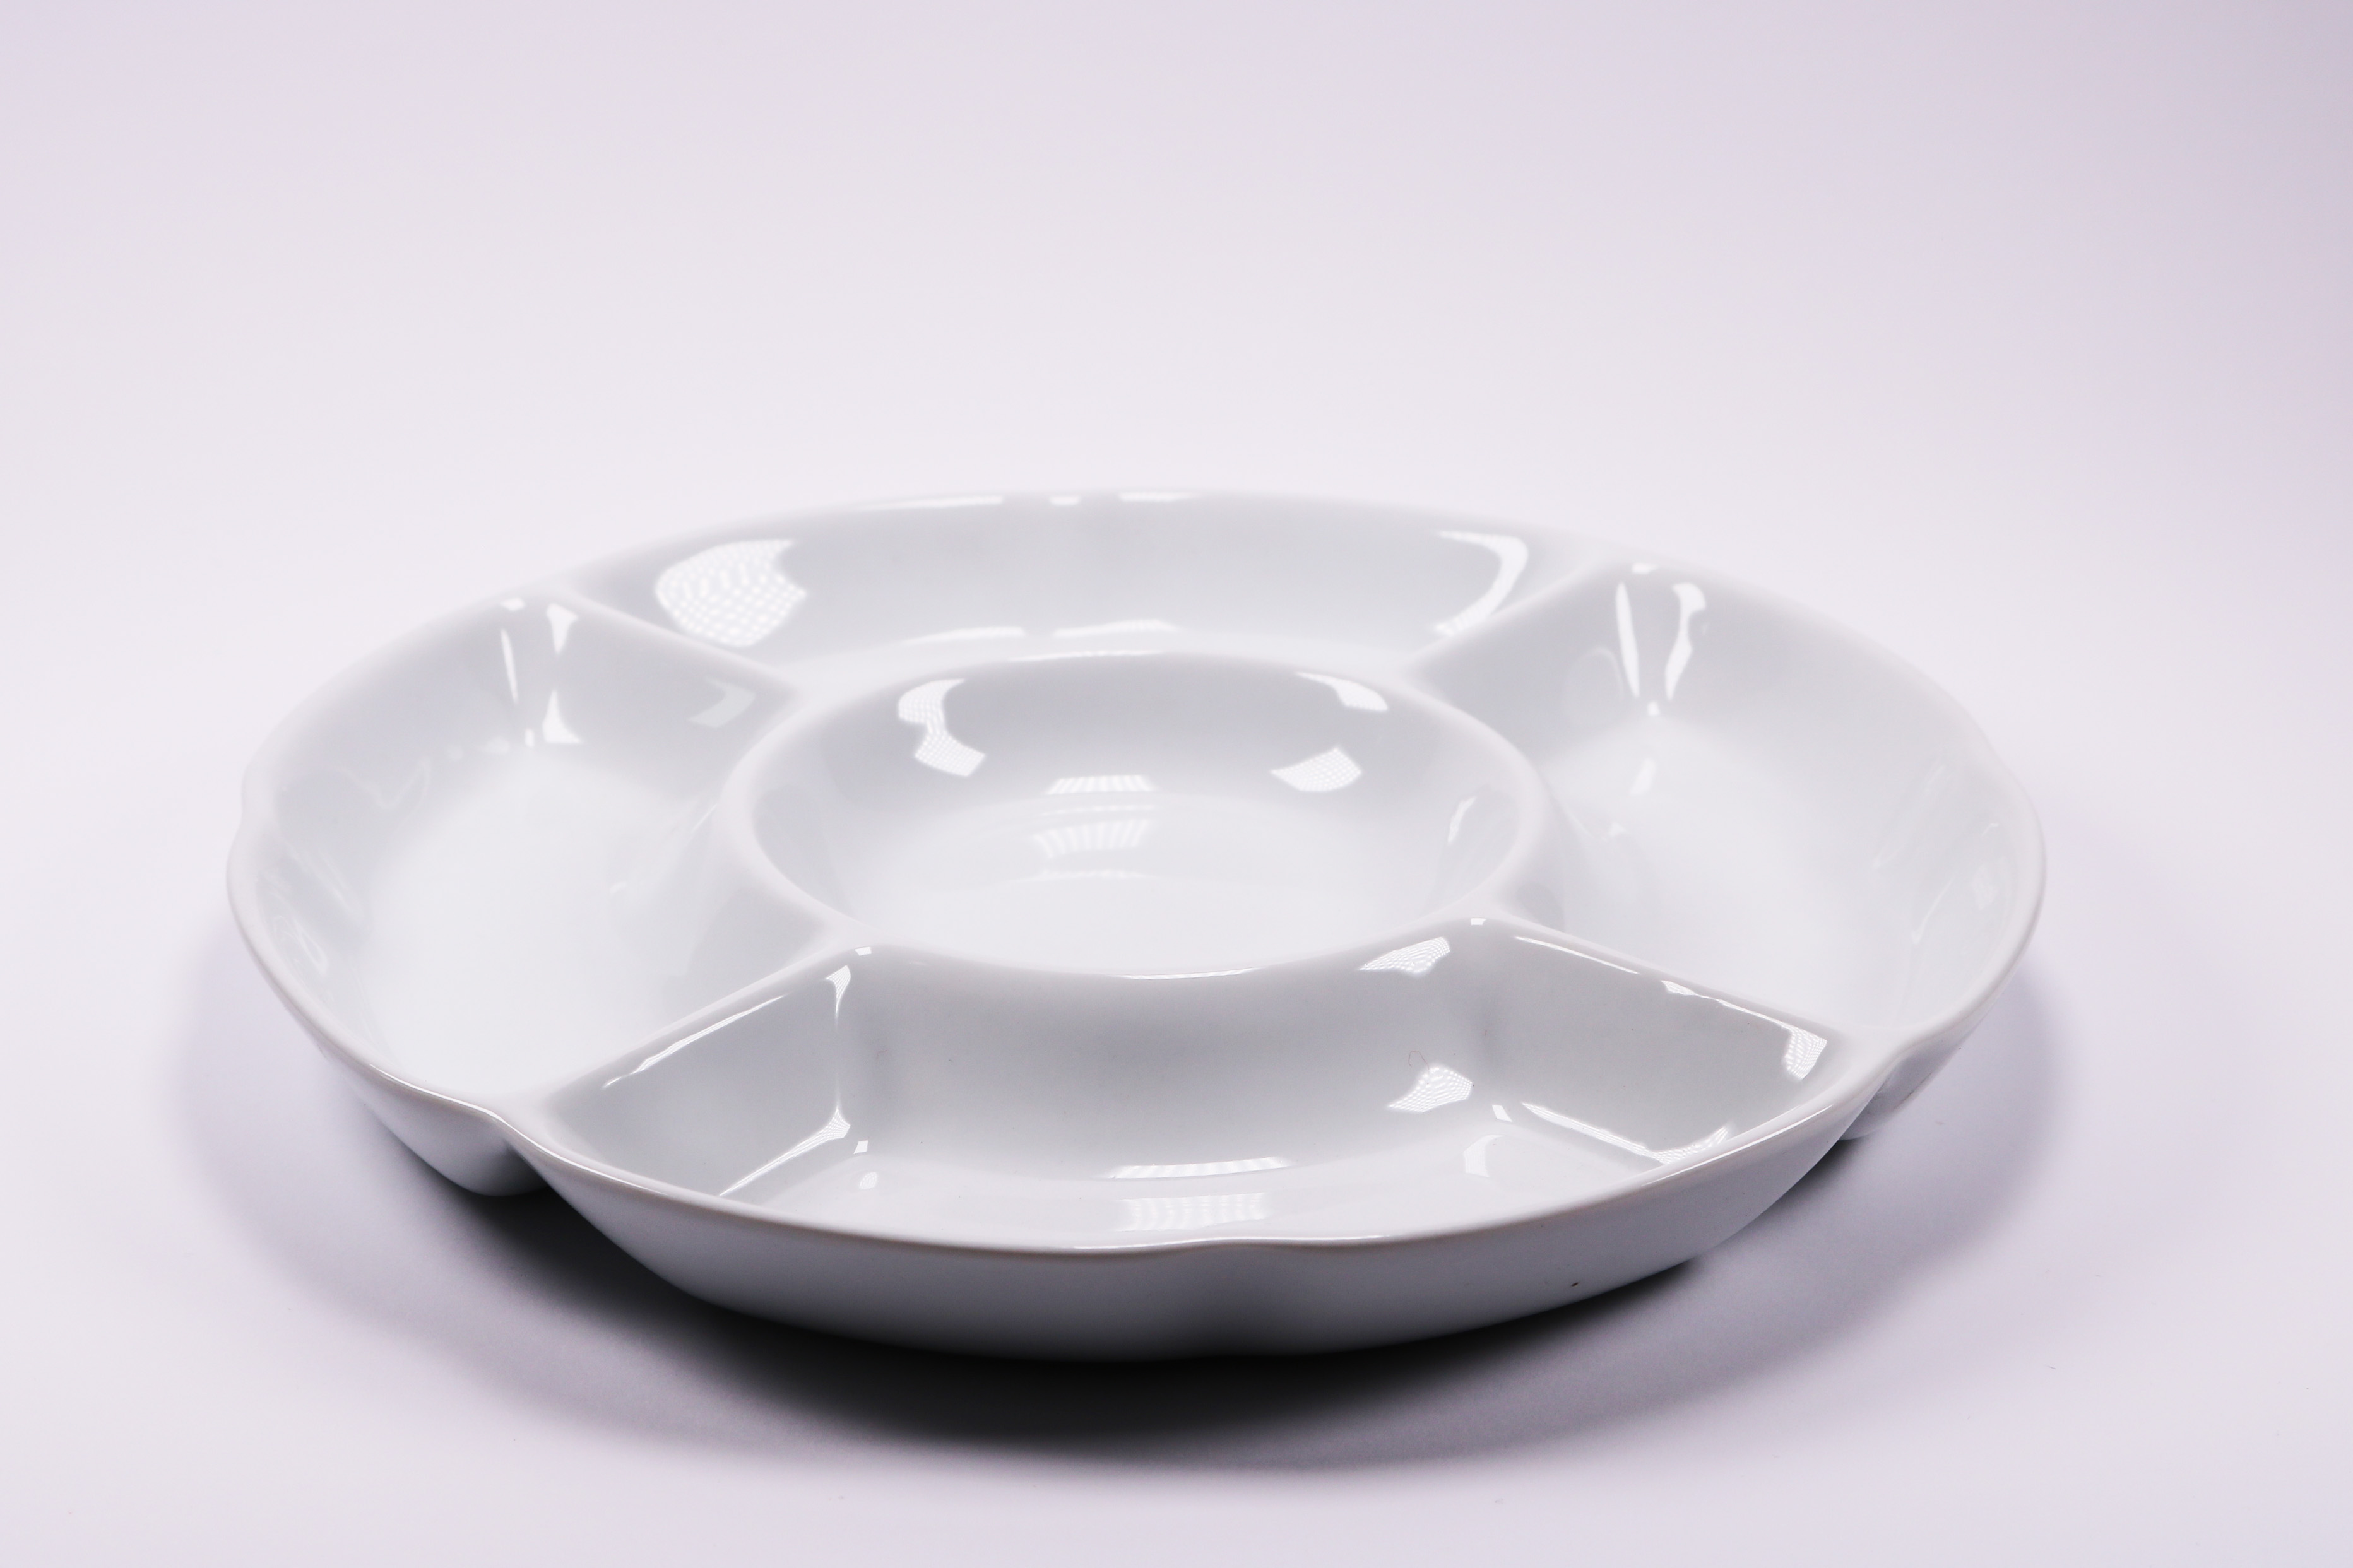 Chip &amp; Dip Serving Set Porcelain Divided Serving Platter